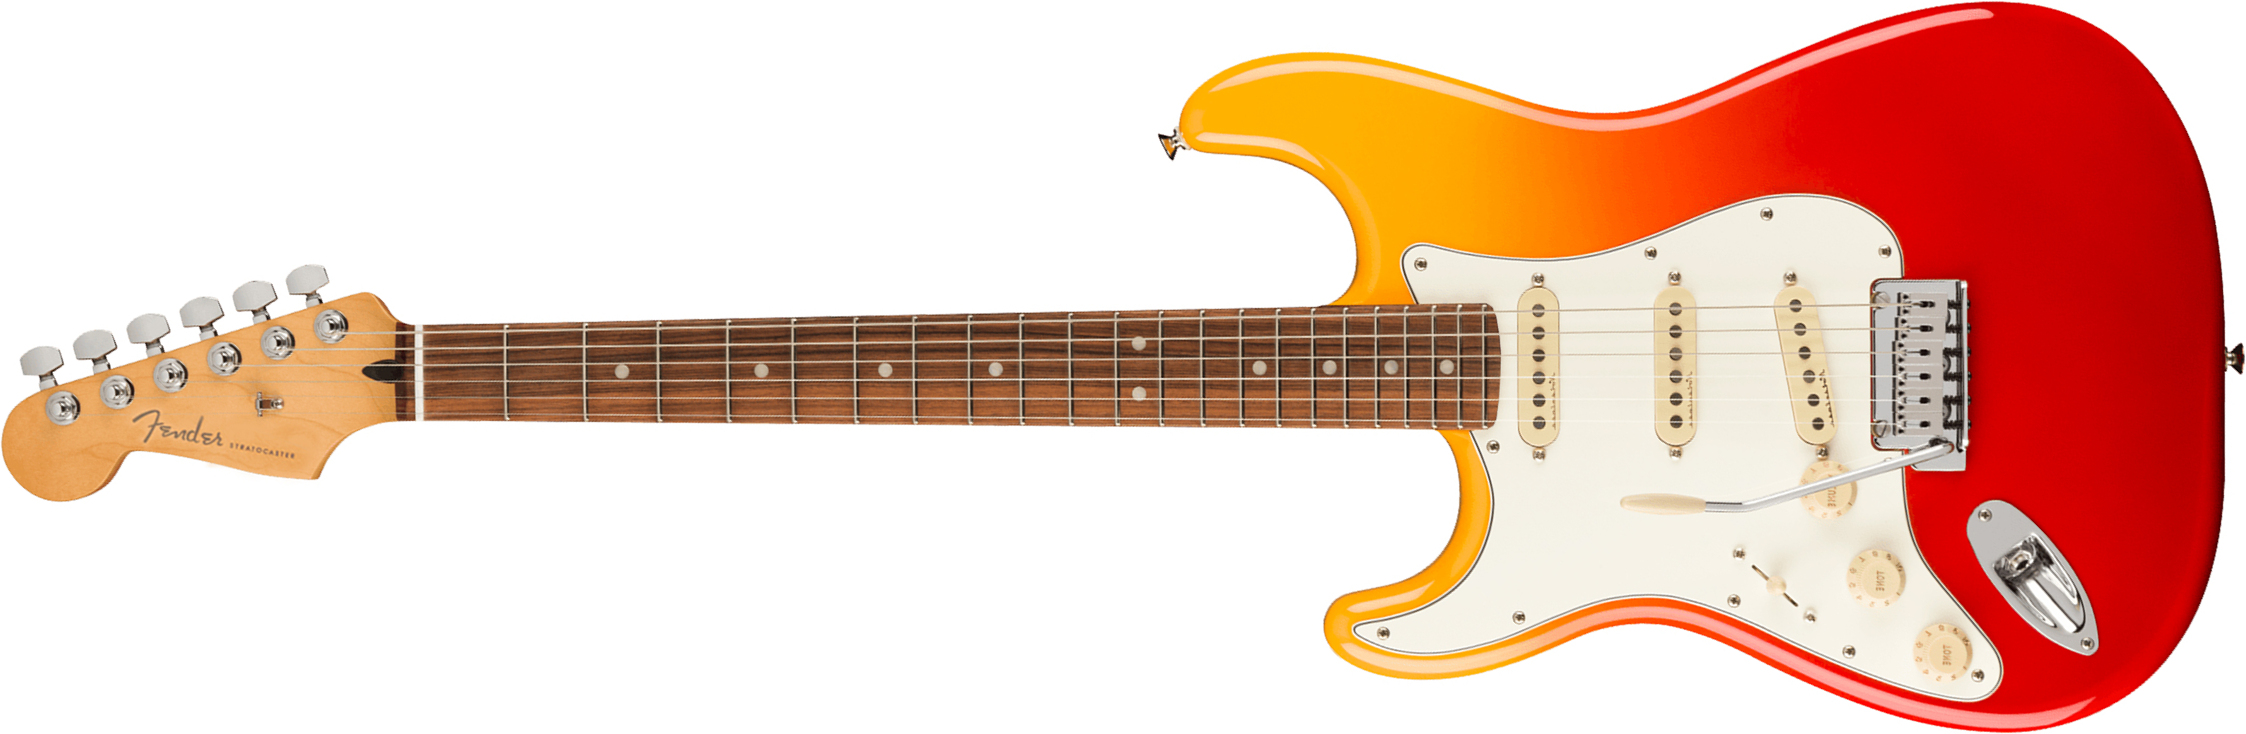 Fender Strat Player Plus Lh Gaucher Mex 3s Trem Pf - Tequila Sunrise - Linkshandige elektrische gitaar - Main picture